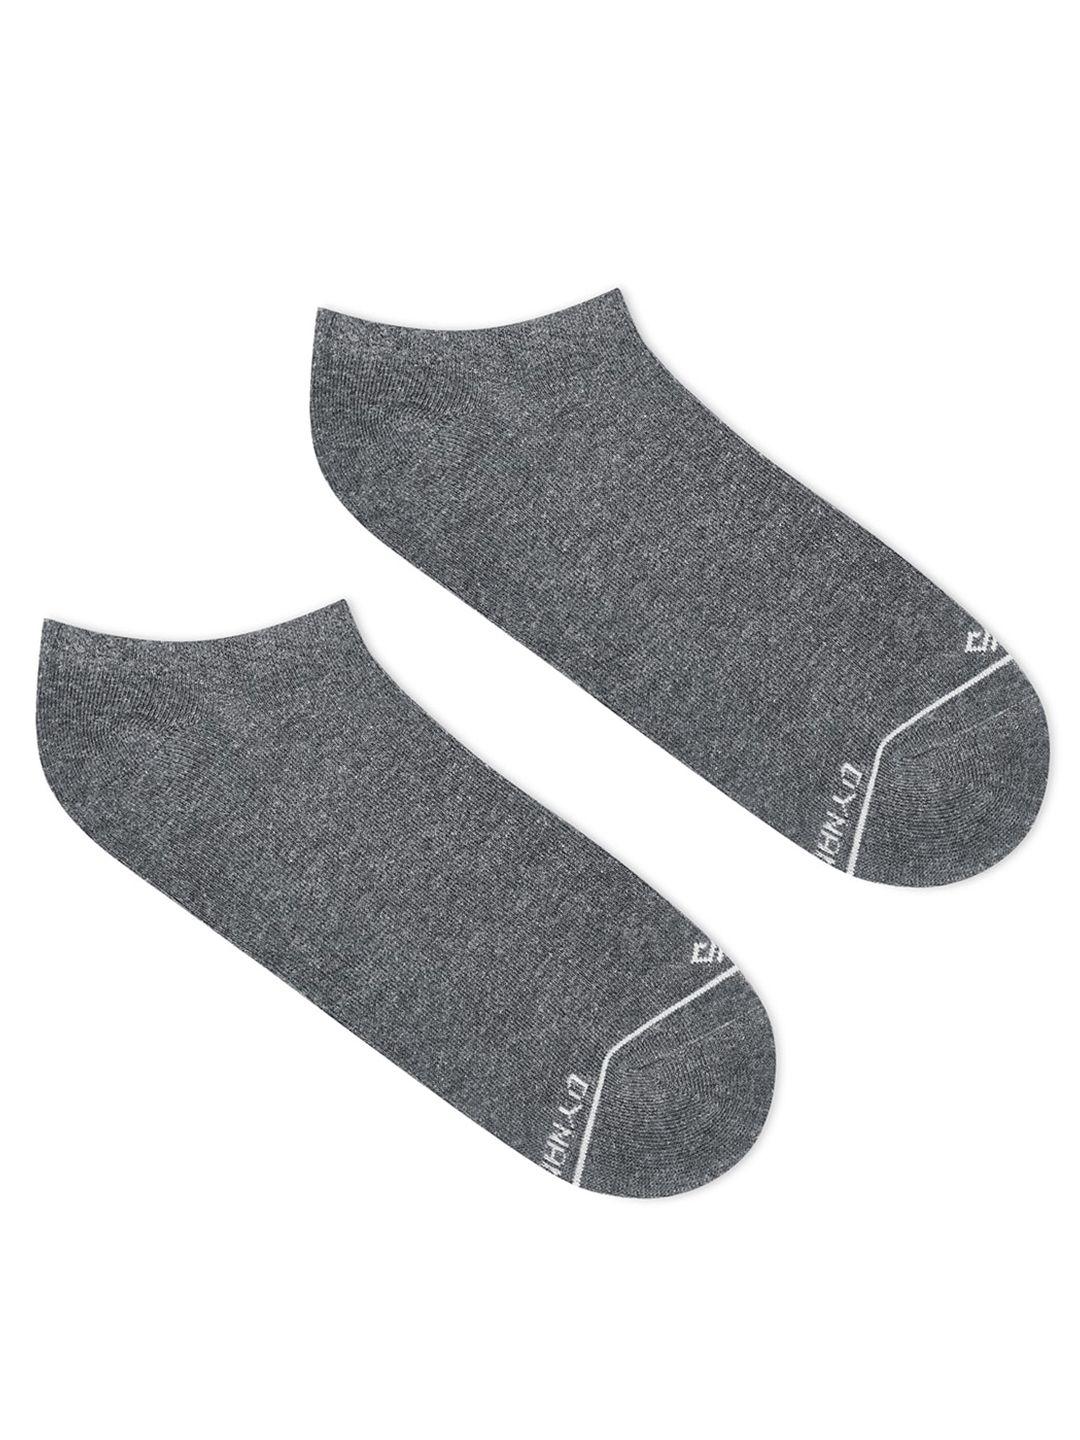 dynamocks ankle length regular socks